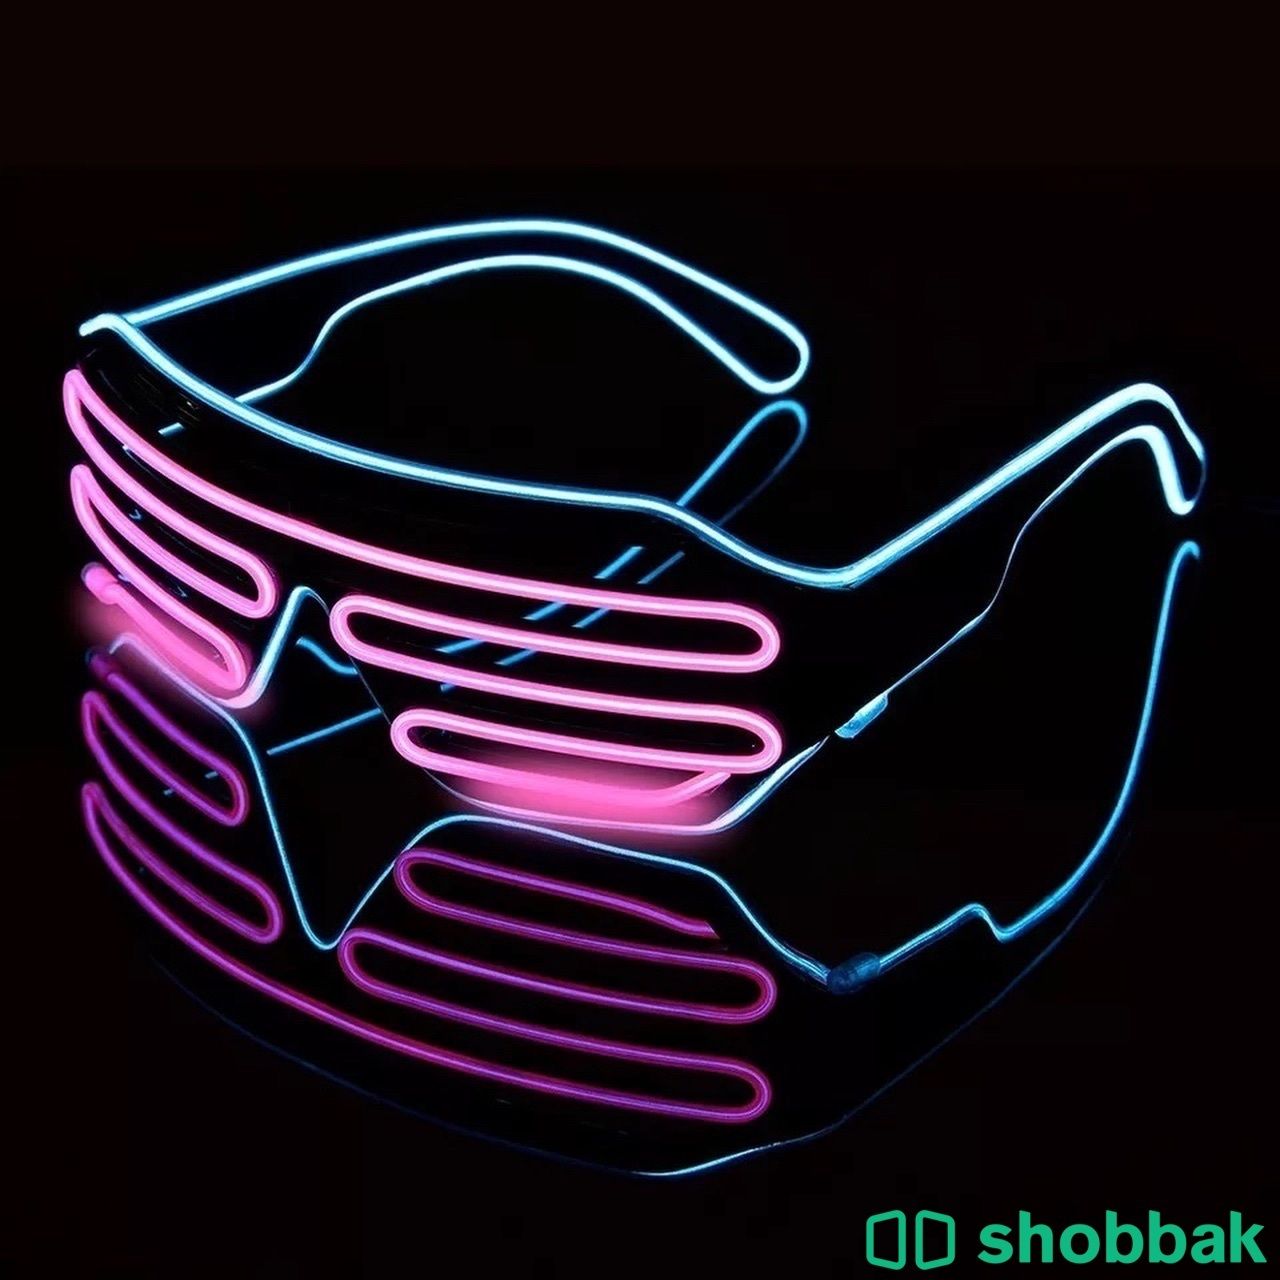 نظارات LED Shobbak Saudi Arabia